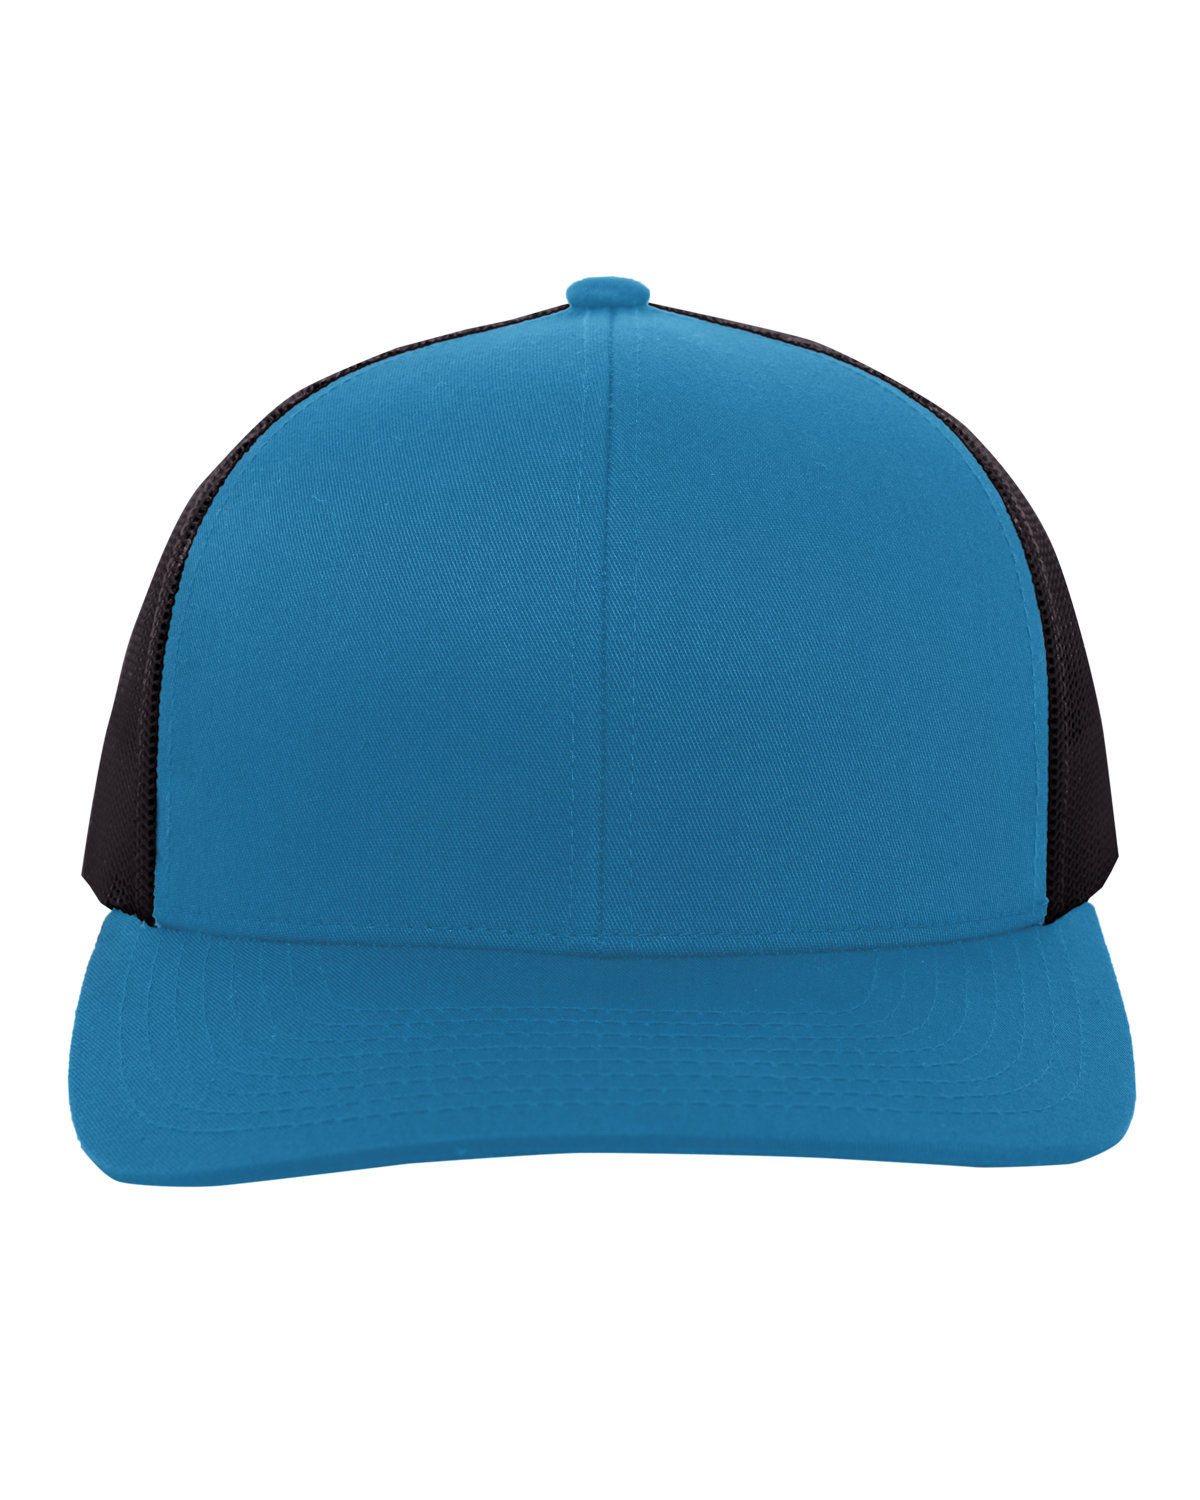 Pacific Headwear Trucker Snapback Hat PAN TL/ CHARCOAL 